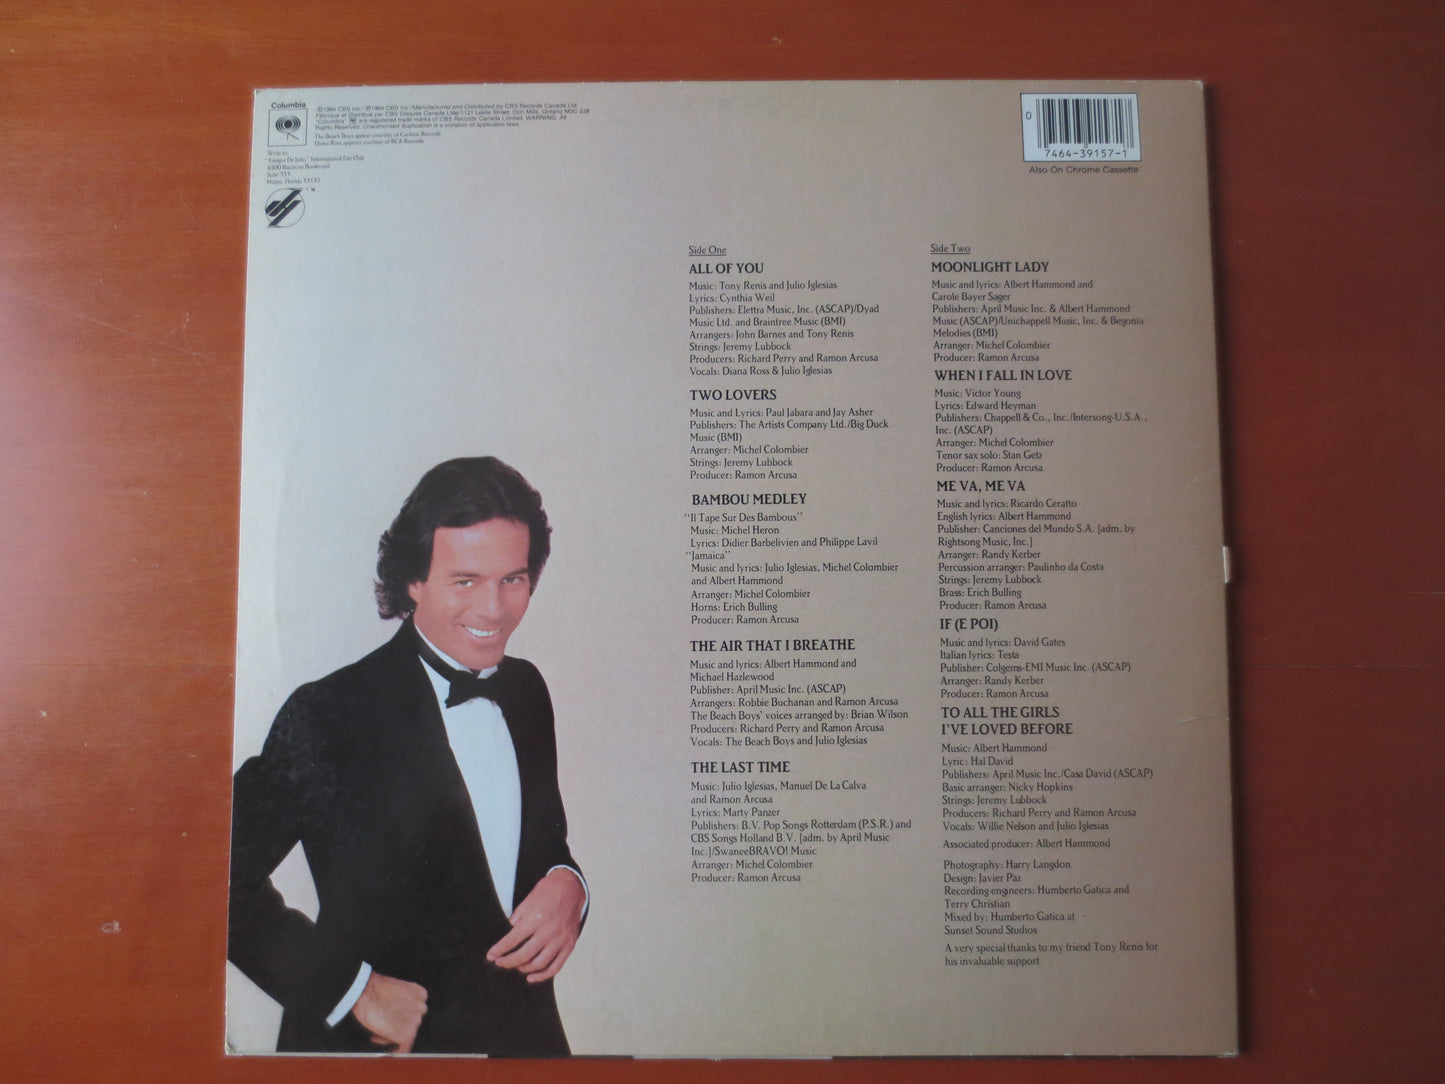 JULIO IGLESIAS, 1100 BEL Air Place, Pop Record, Julio Iglesias Music, Julio Iglesias Album, Vinyl Record, lps, 1984 Records